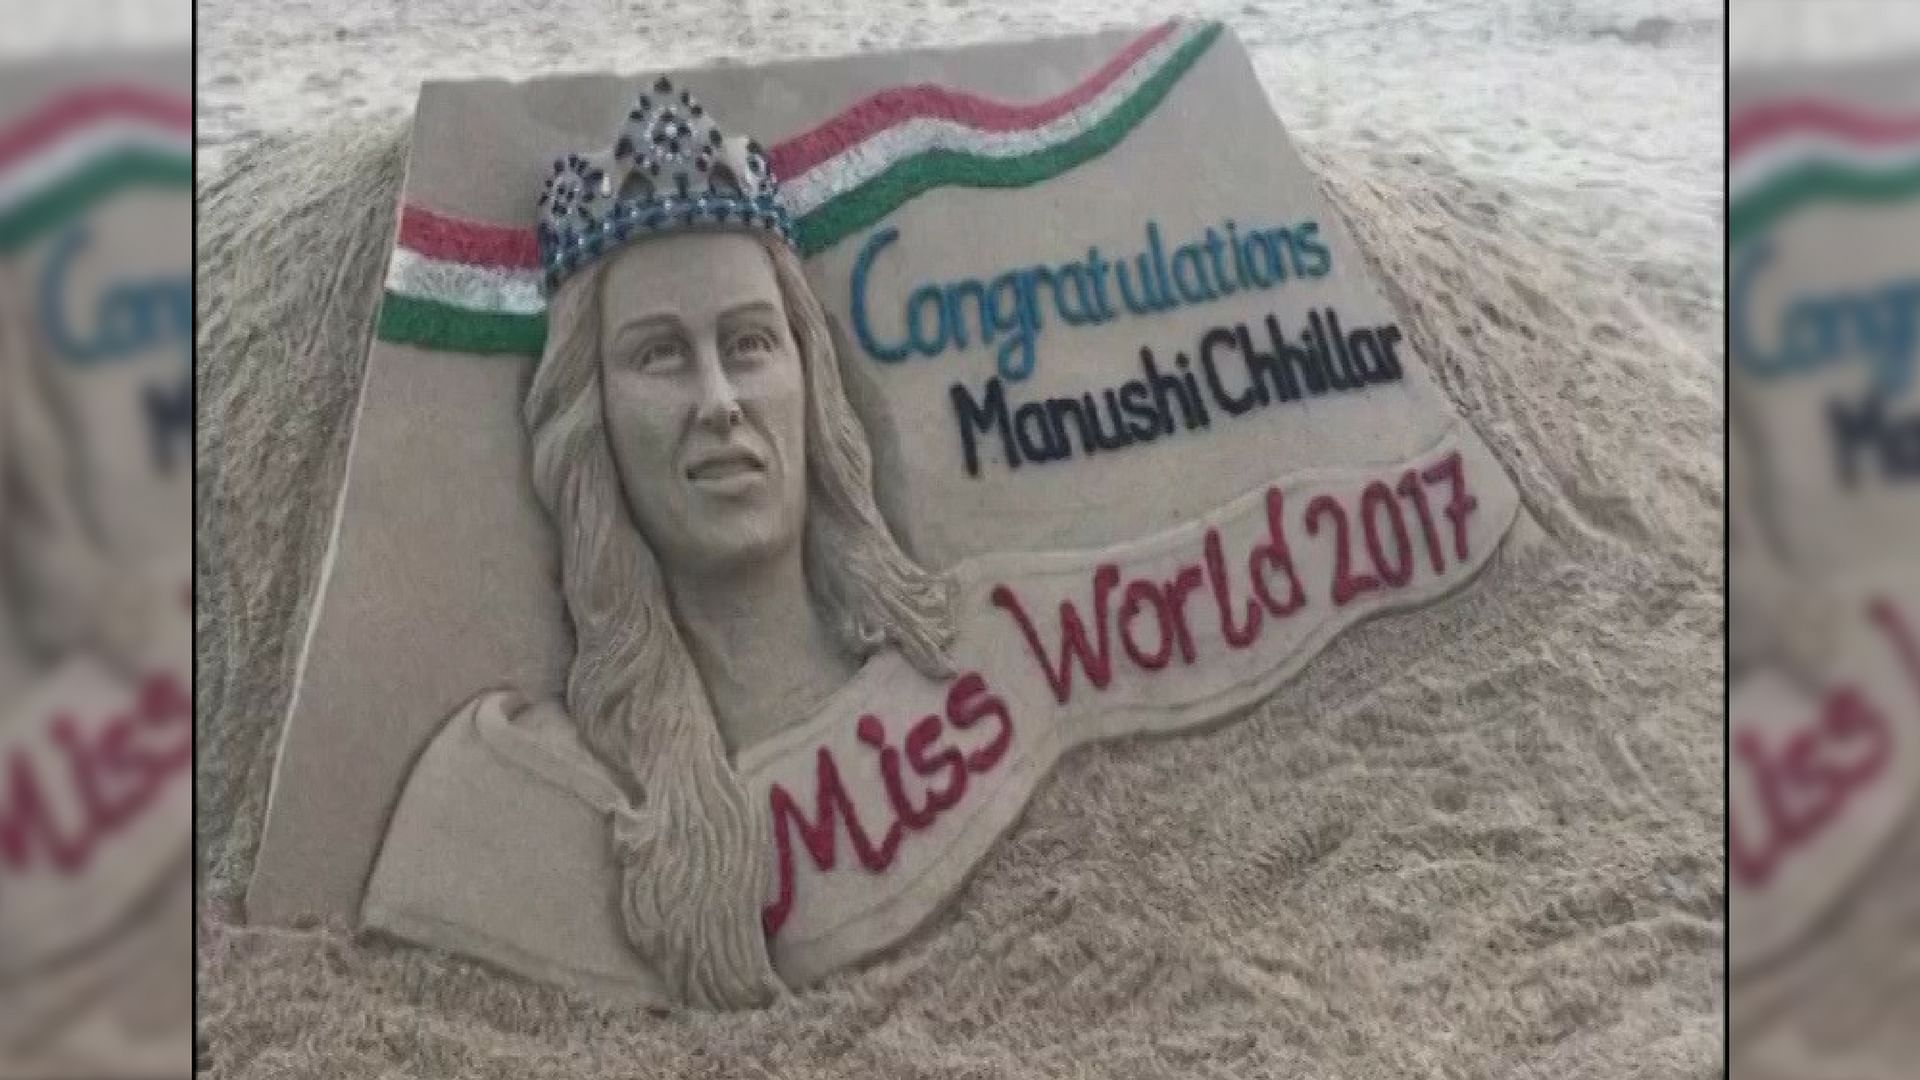 रेत कला के आर्टिस्ट सुदर्शन पटनायक ने मिस वर्ल्ड का खिताब जीतने वाली मानुषी छिल्लर को अपने तरीके से बधाई दी है